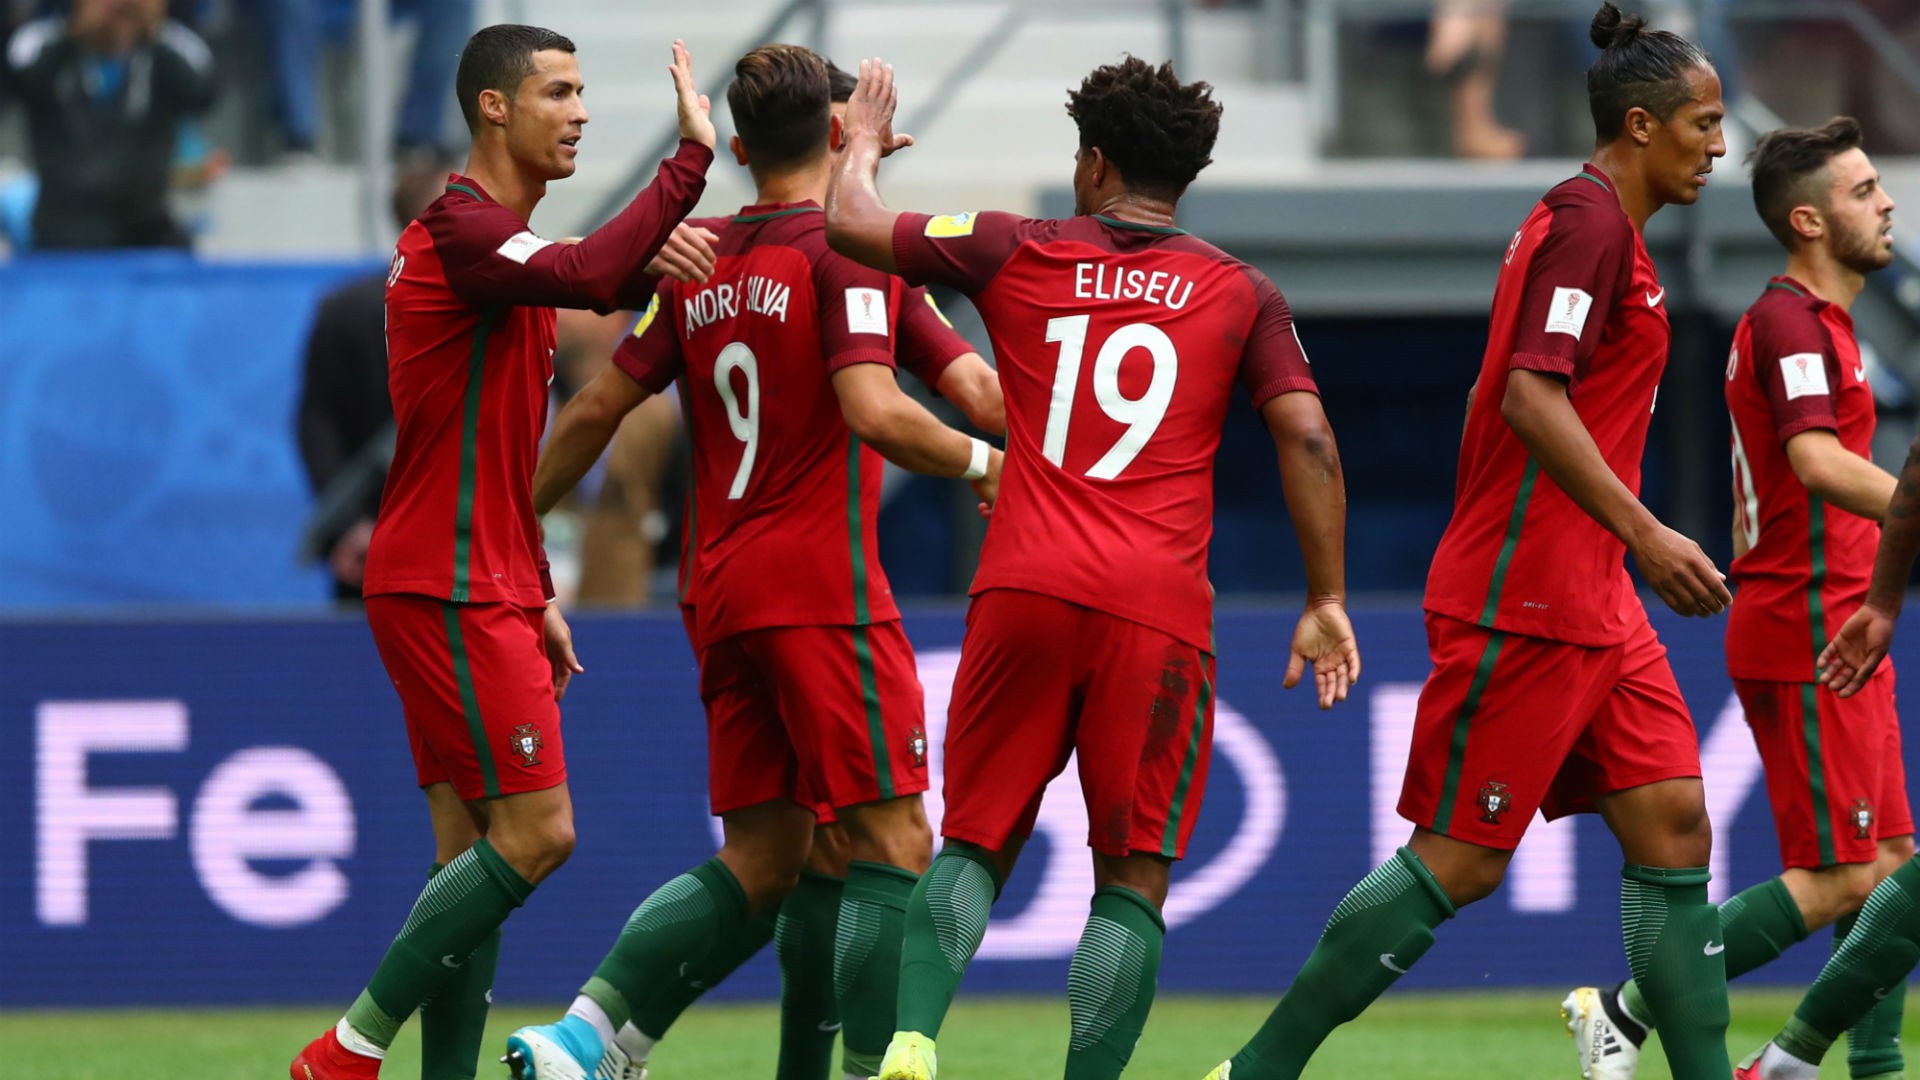 Đội tuyển Bồ Đào Nha đang có phong độ tốt sau khi vô địch EURO 2016